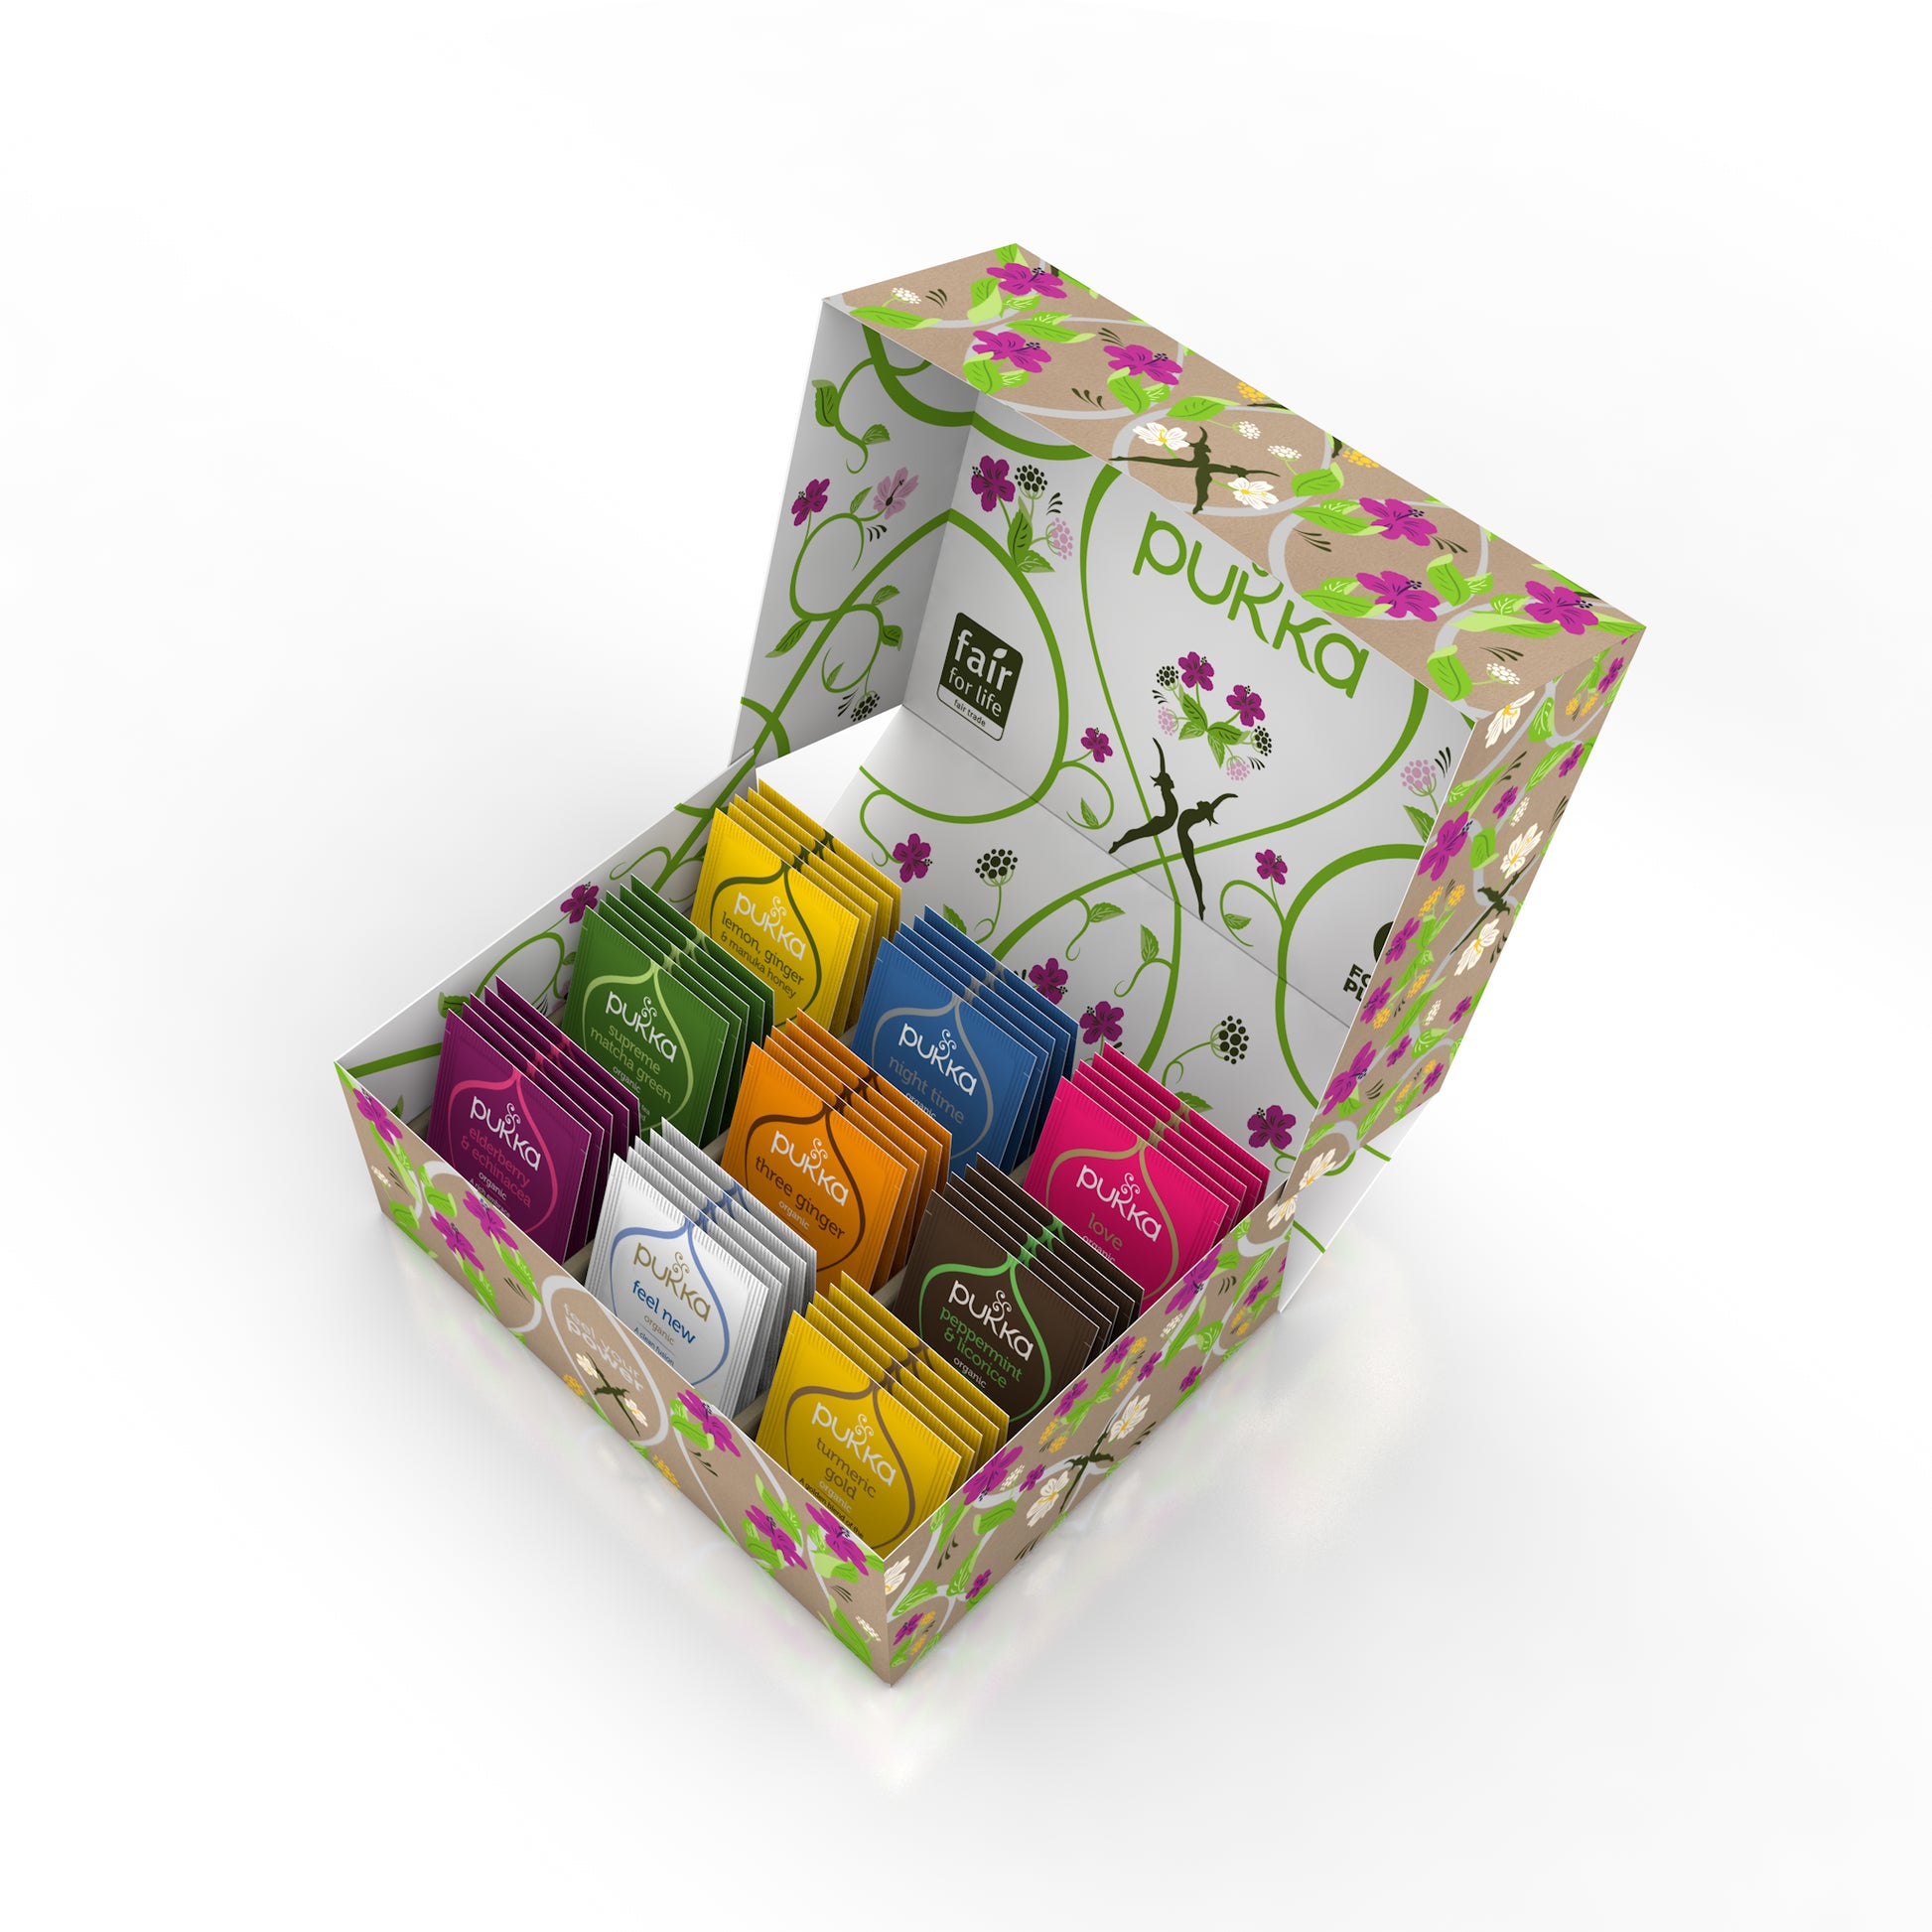 Pukkaware Gifting - Pukka Tea Selection Box - 45 bag – Ceres Organics